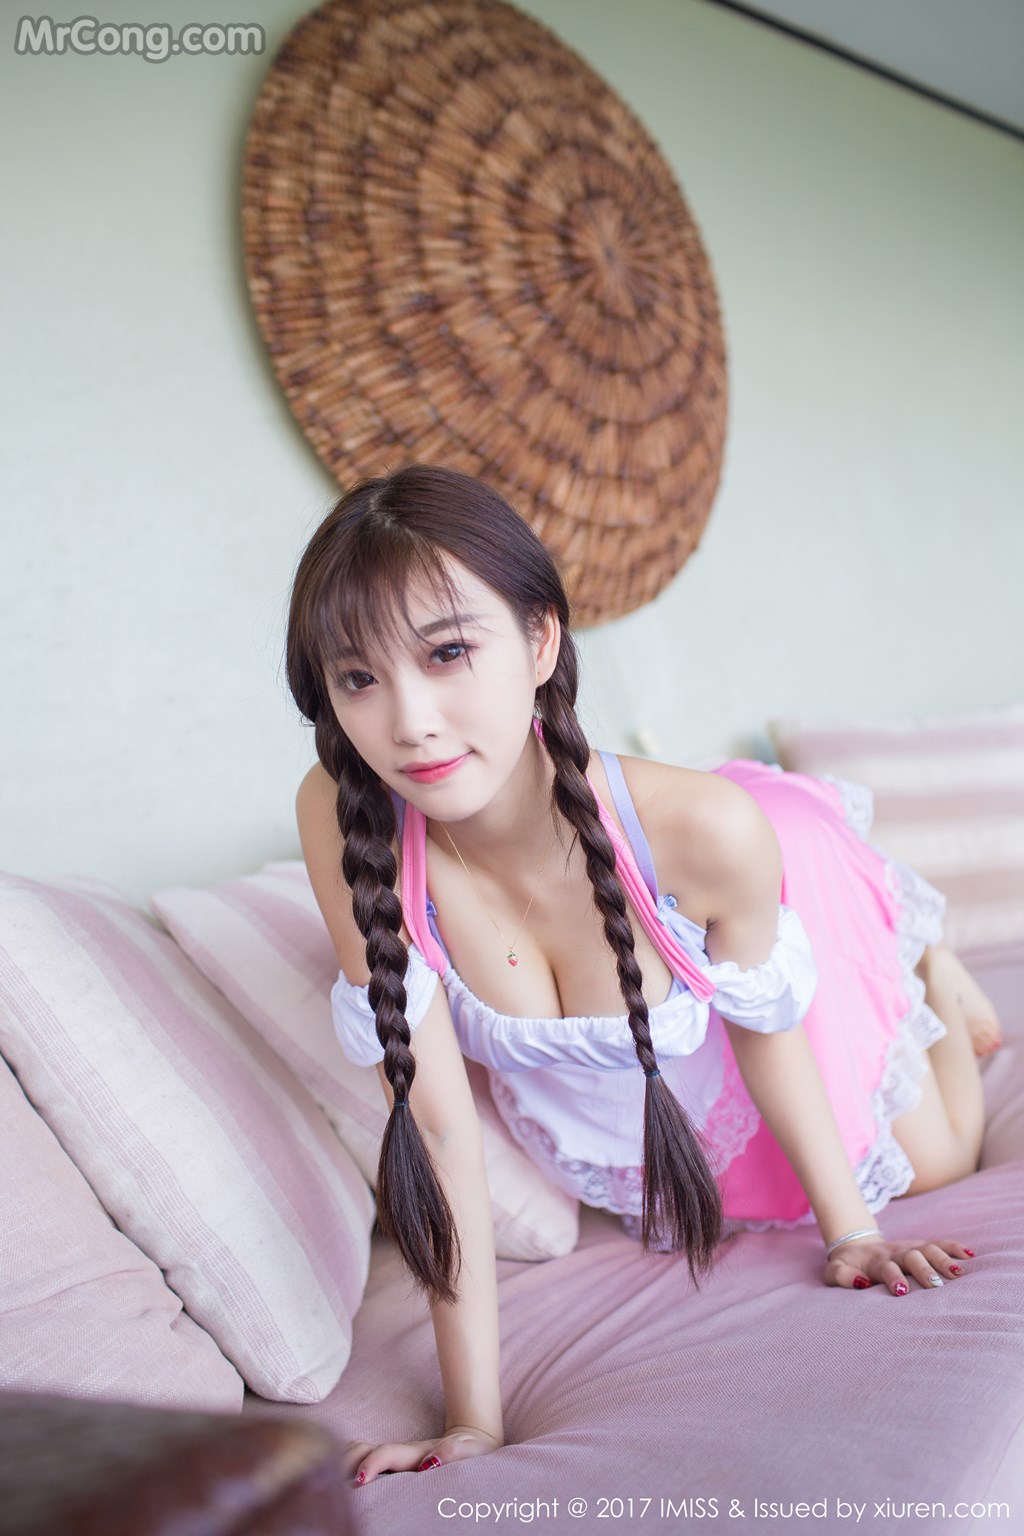 IMISS Vol.159: Model Yang Chen Chen (杨晨晨 sugar) (54 photos)